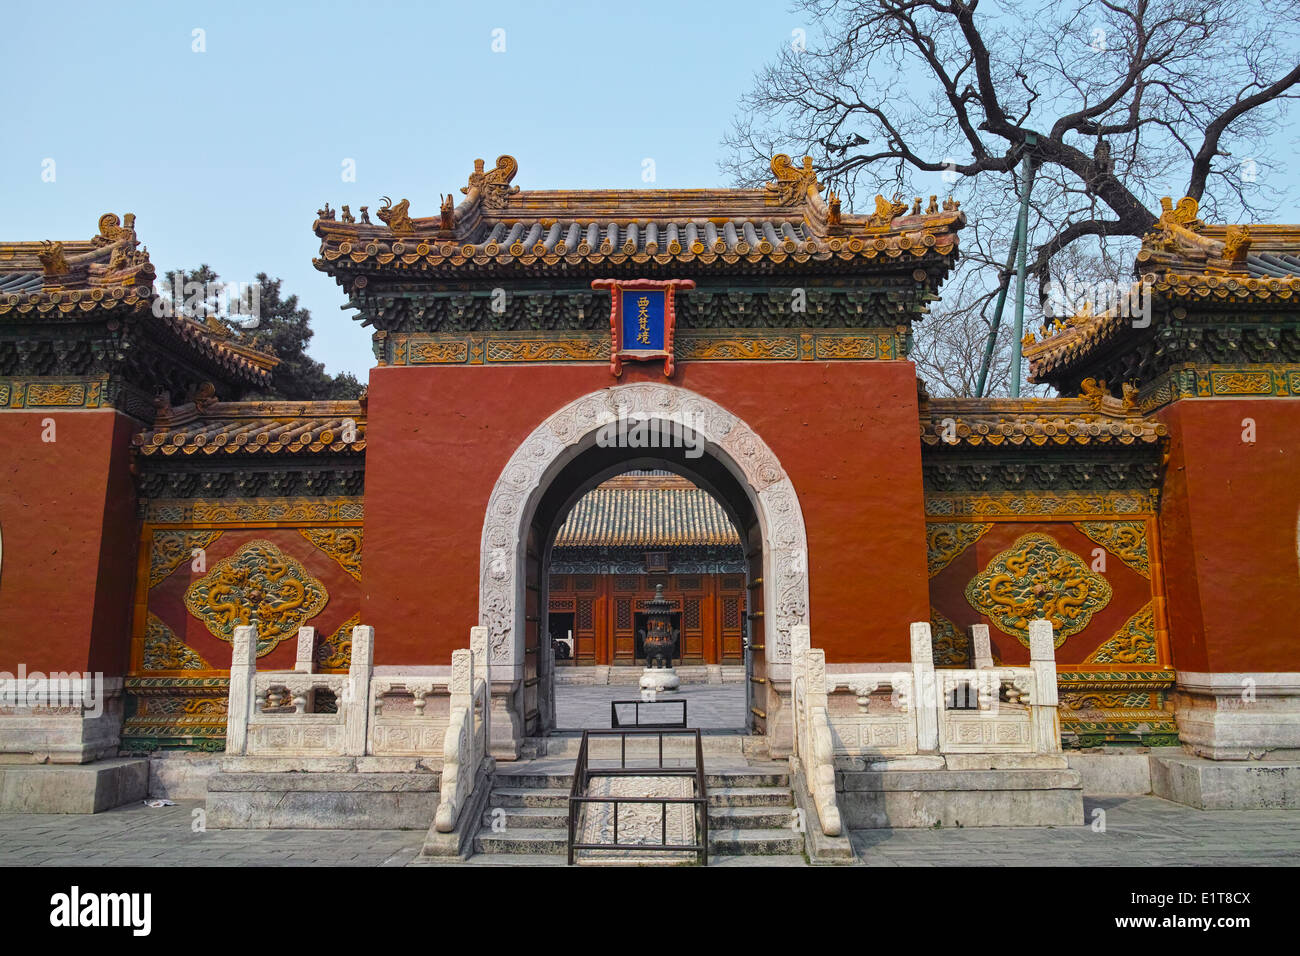 Ancient temple in Beihai park, Beijing Stock Photo